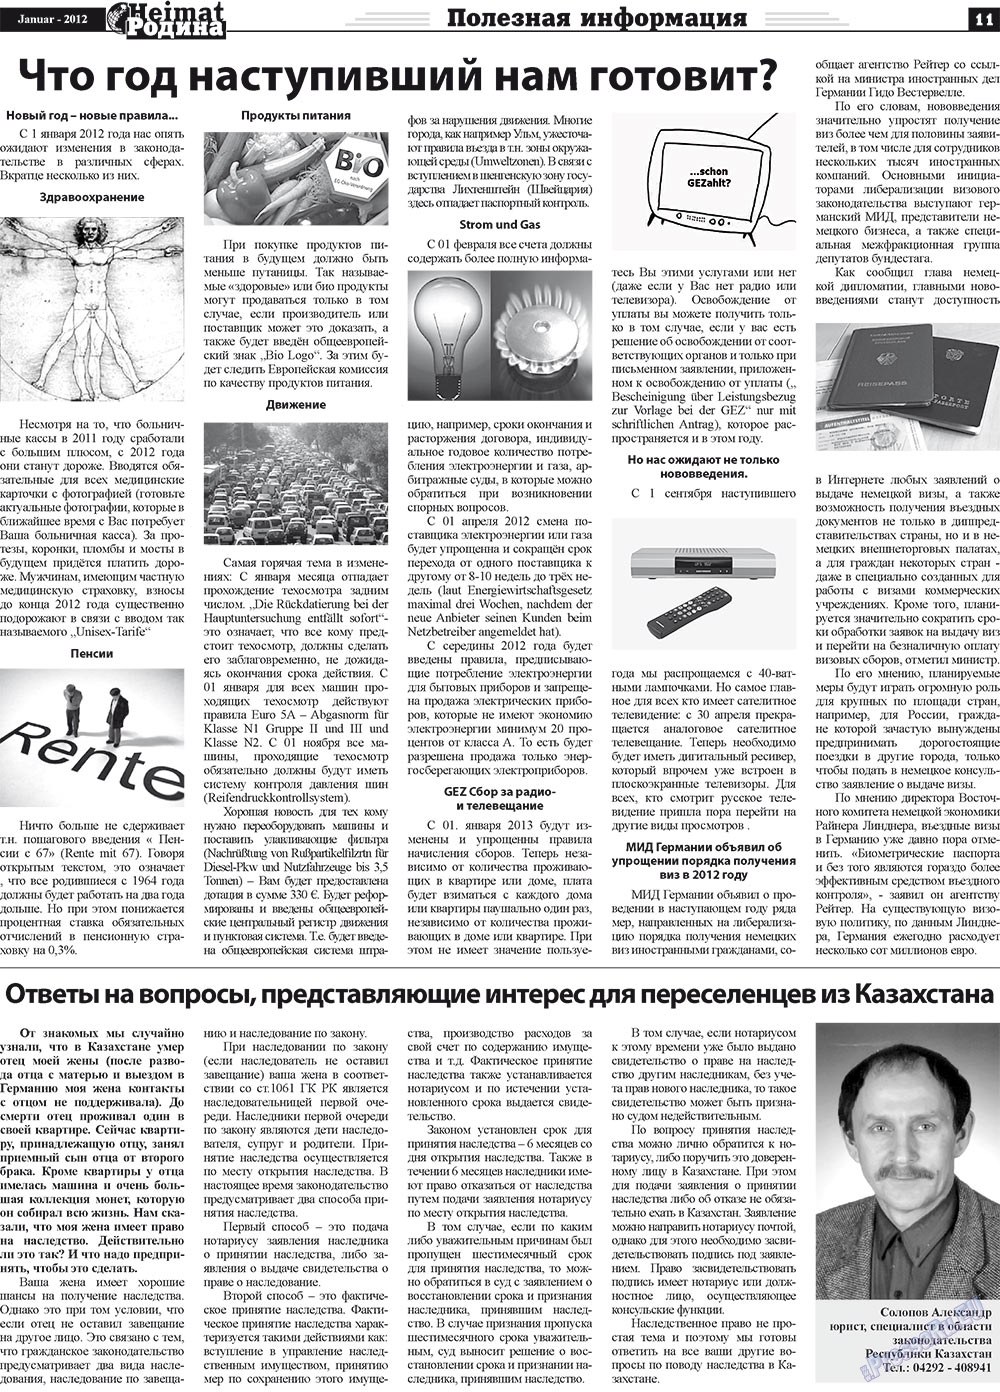 Heimat-Родина (газета). 2012 год, номер 1, стр. 11